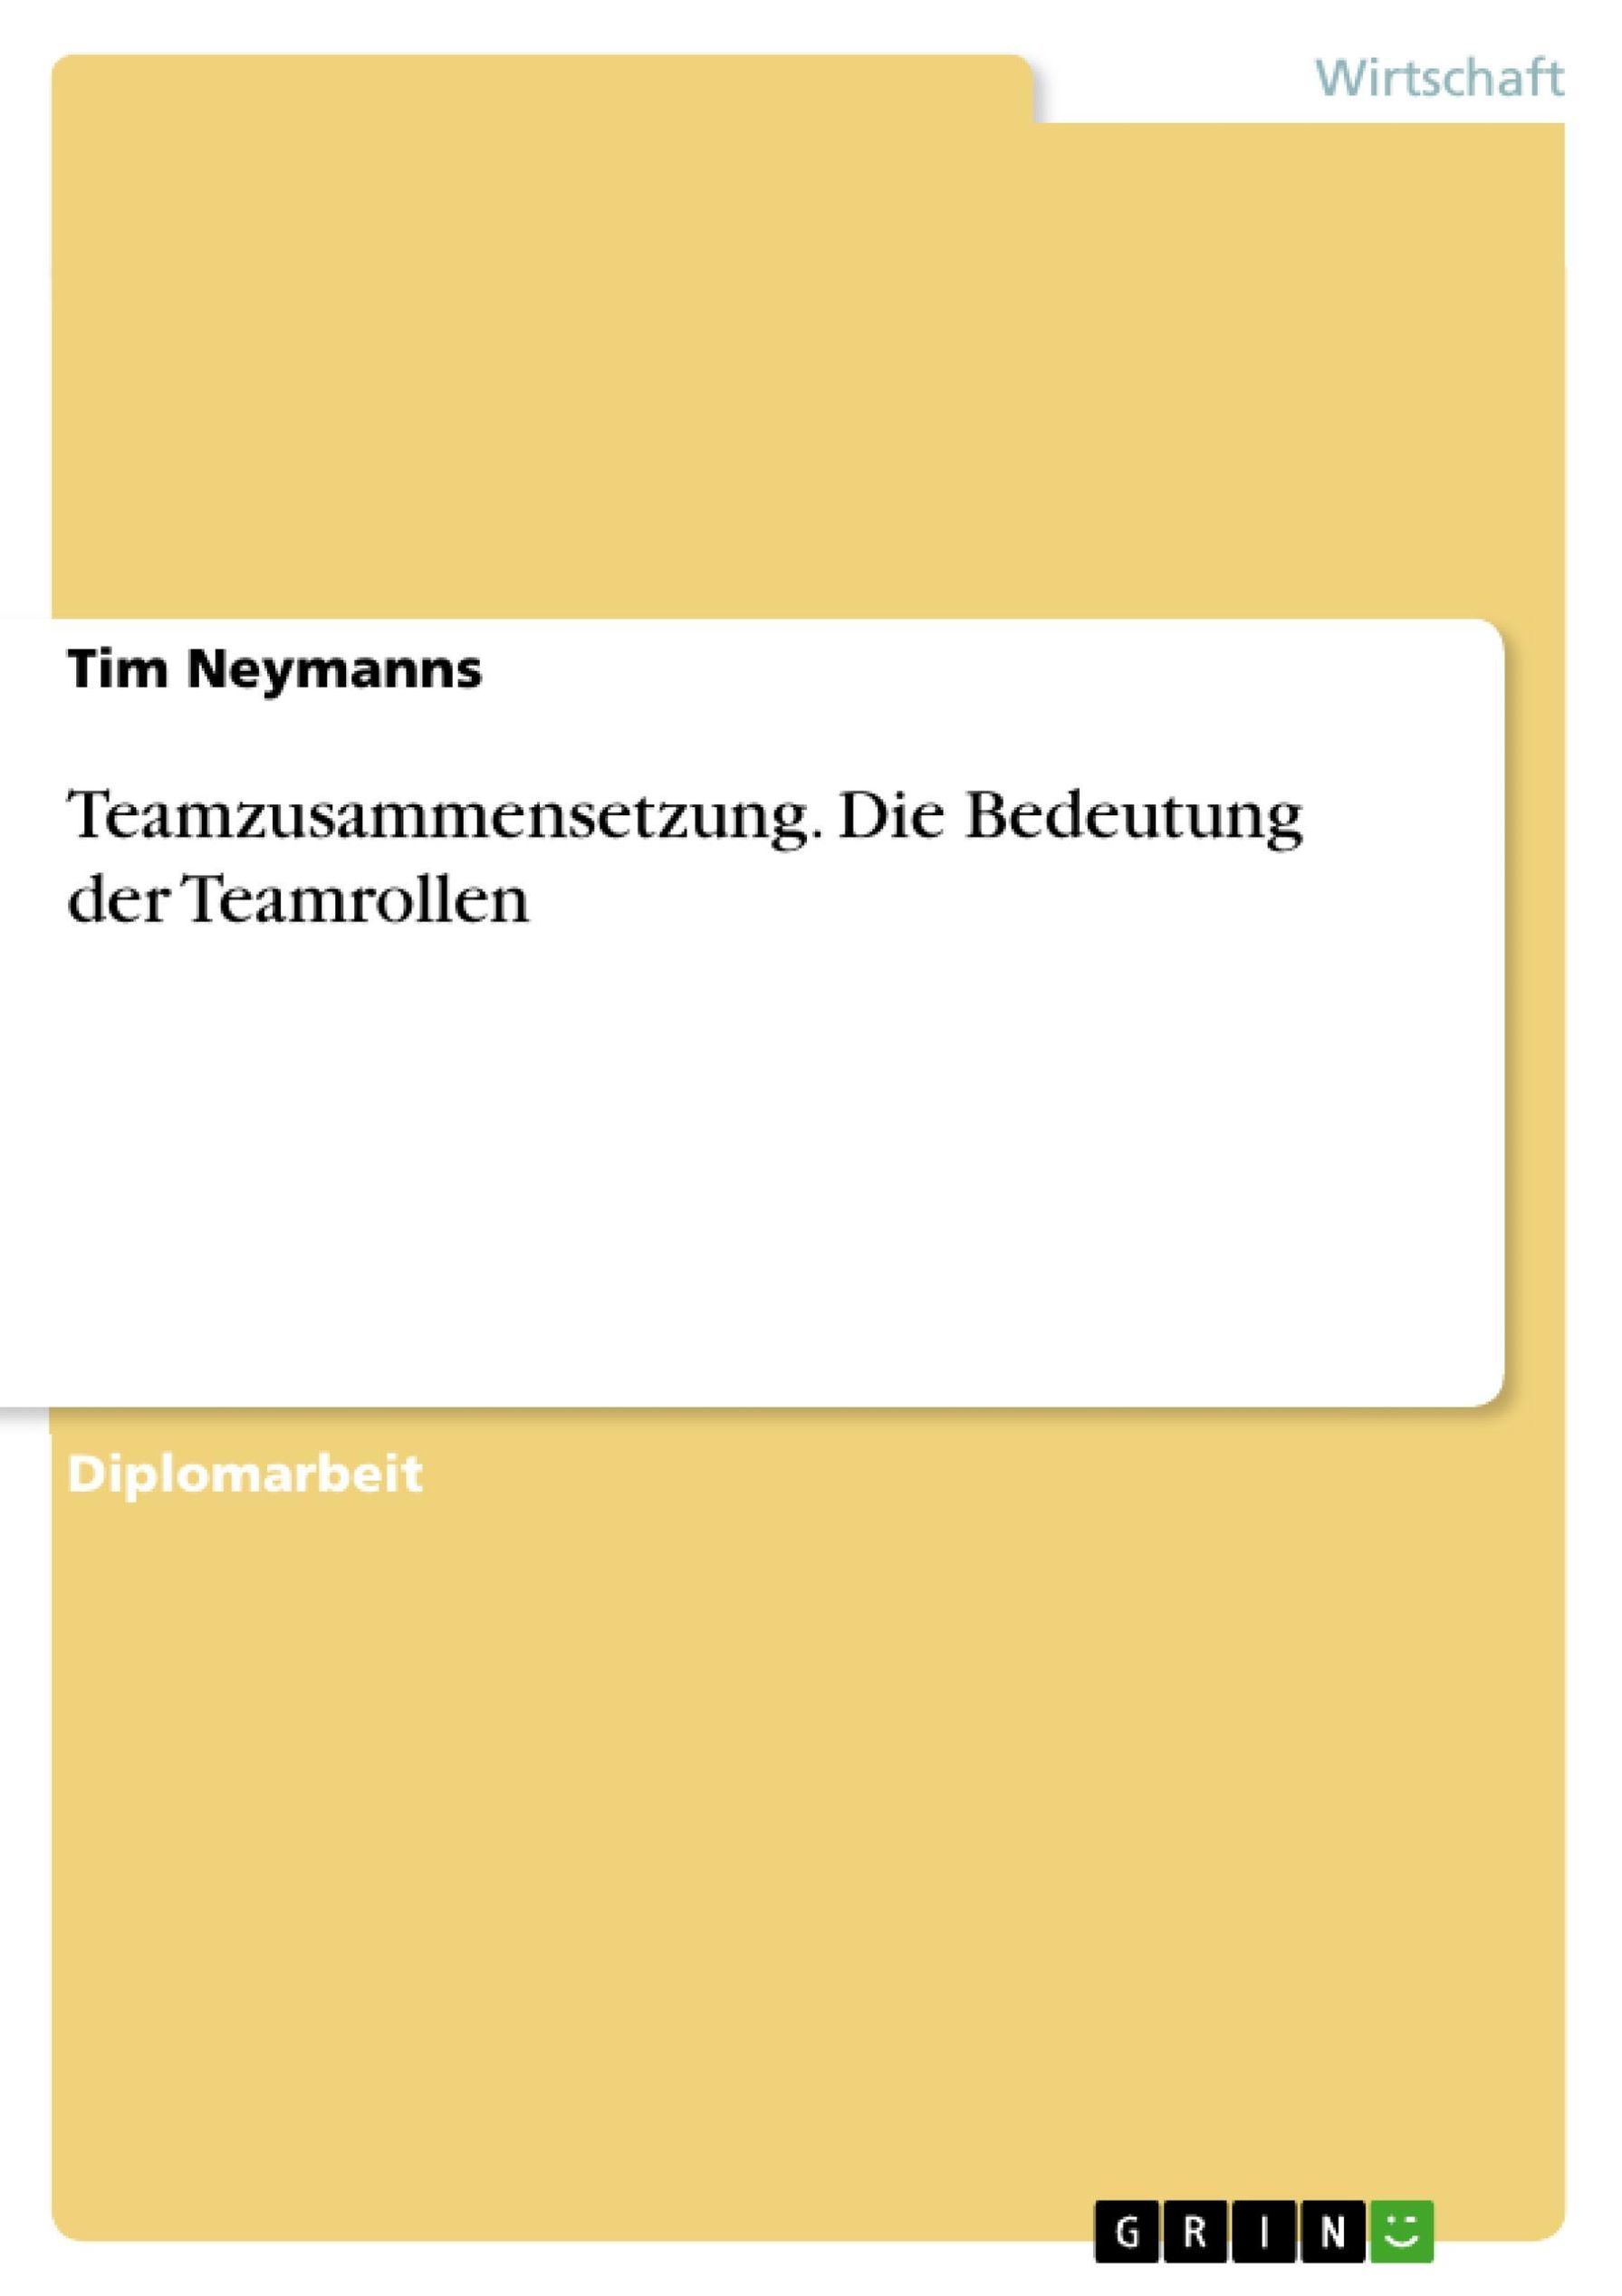 Teamzusammensetzung - Die Bedeutung der Teamrollen eBook v. Tim Neymanns |  Weltbild